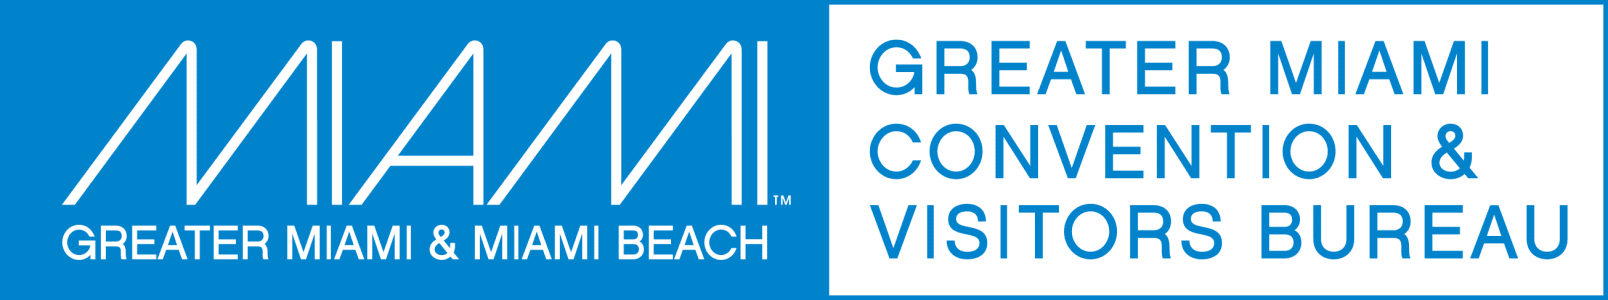 GMCVB logo